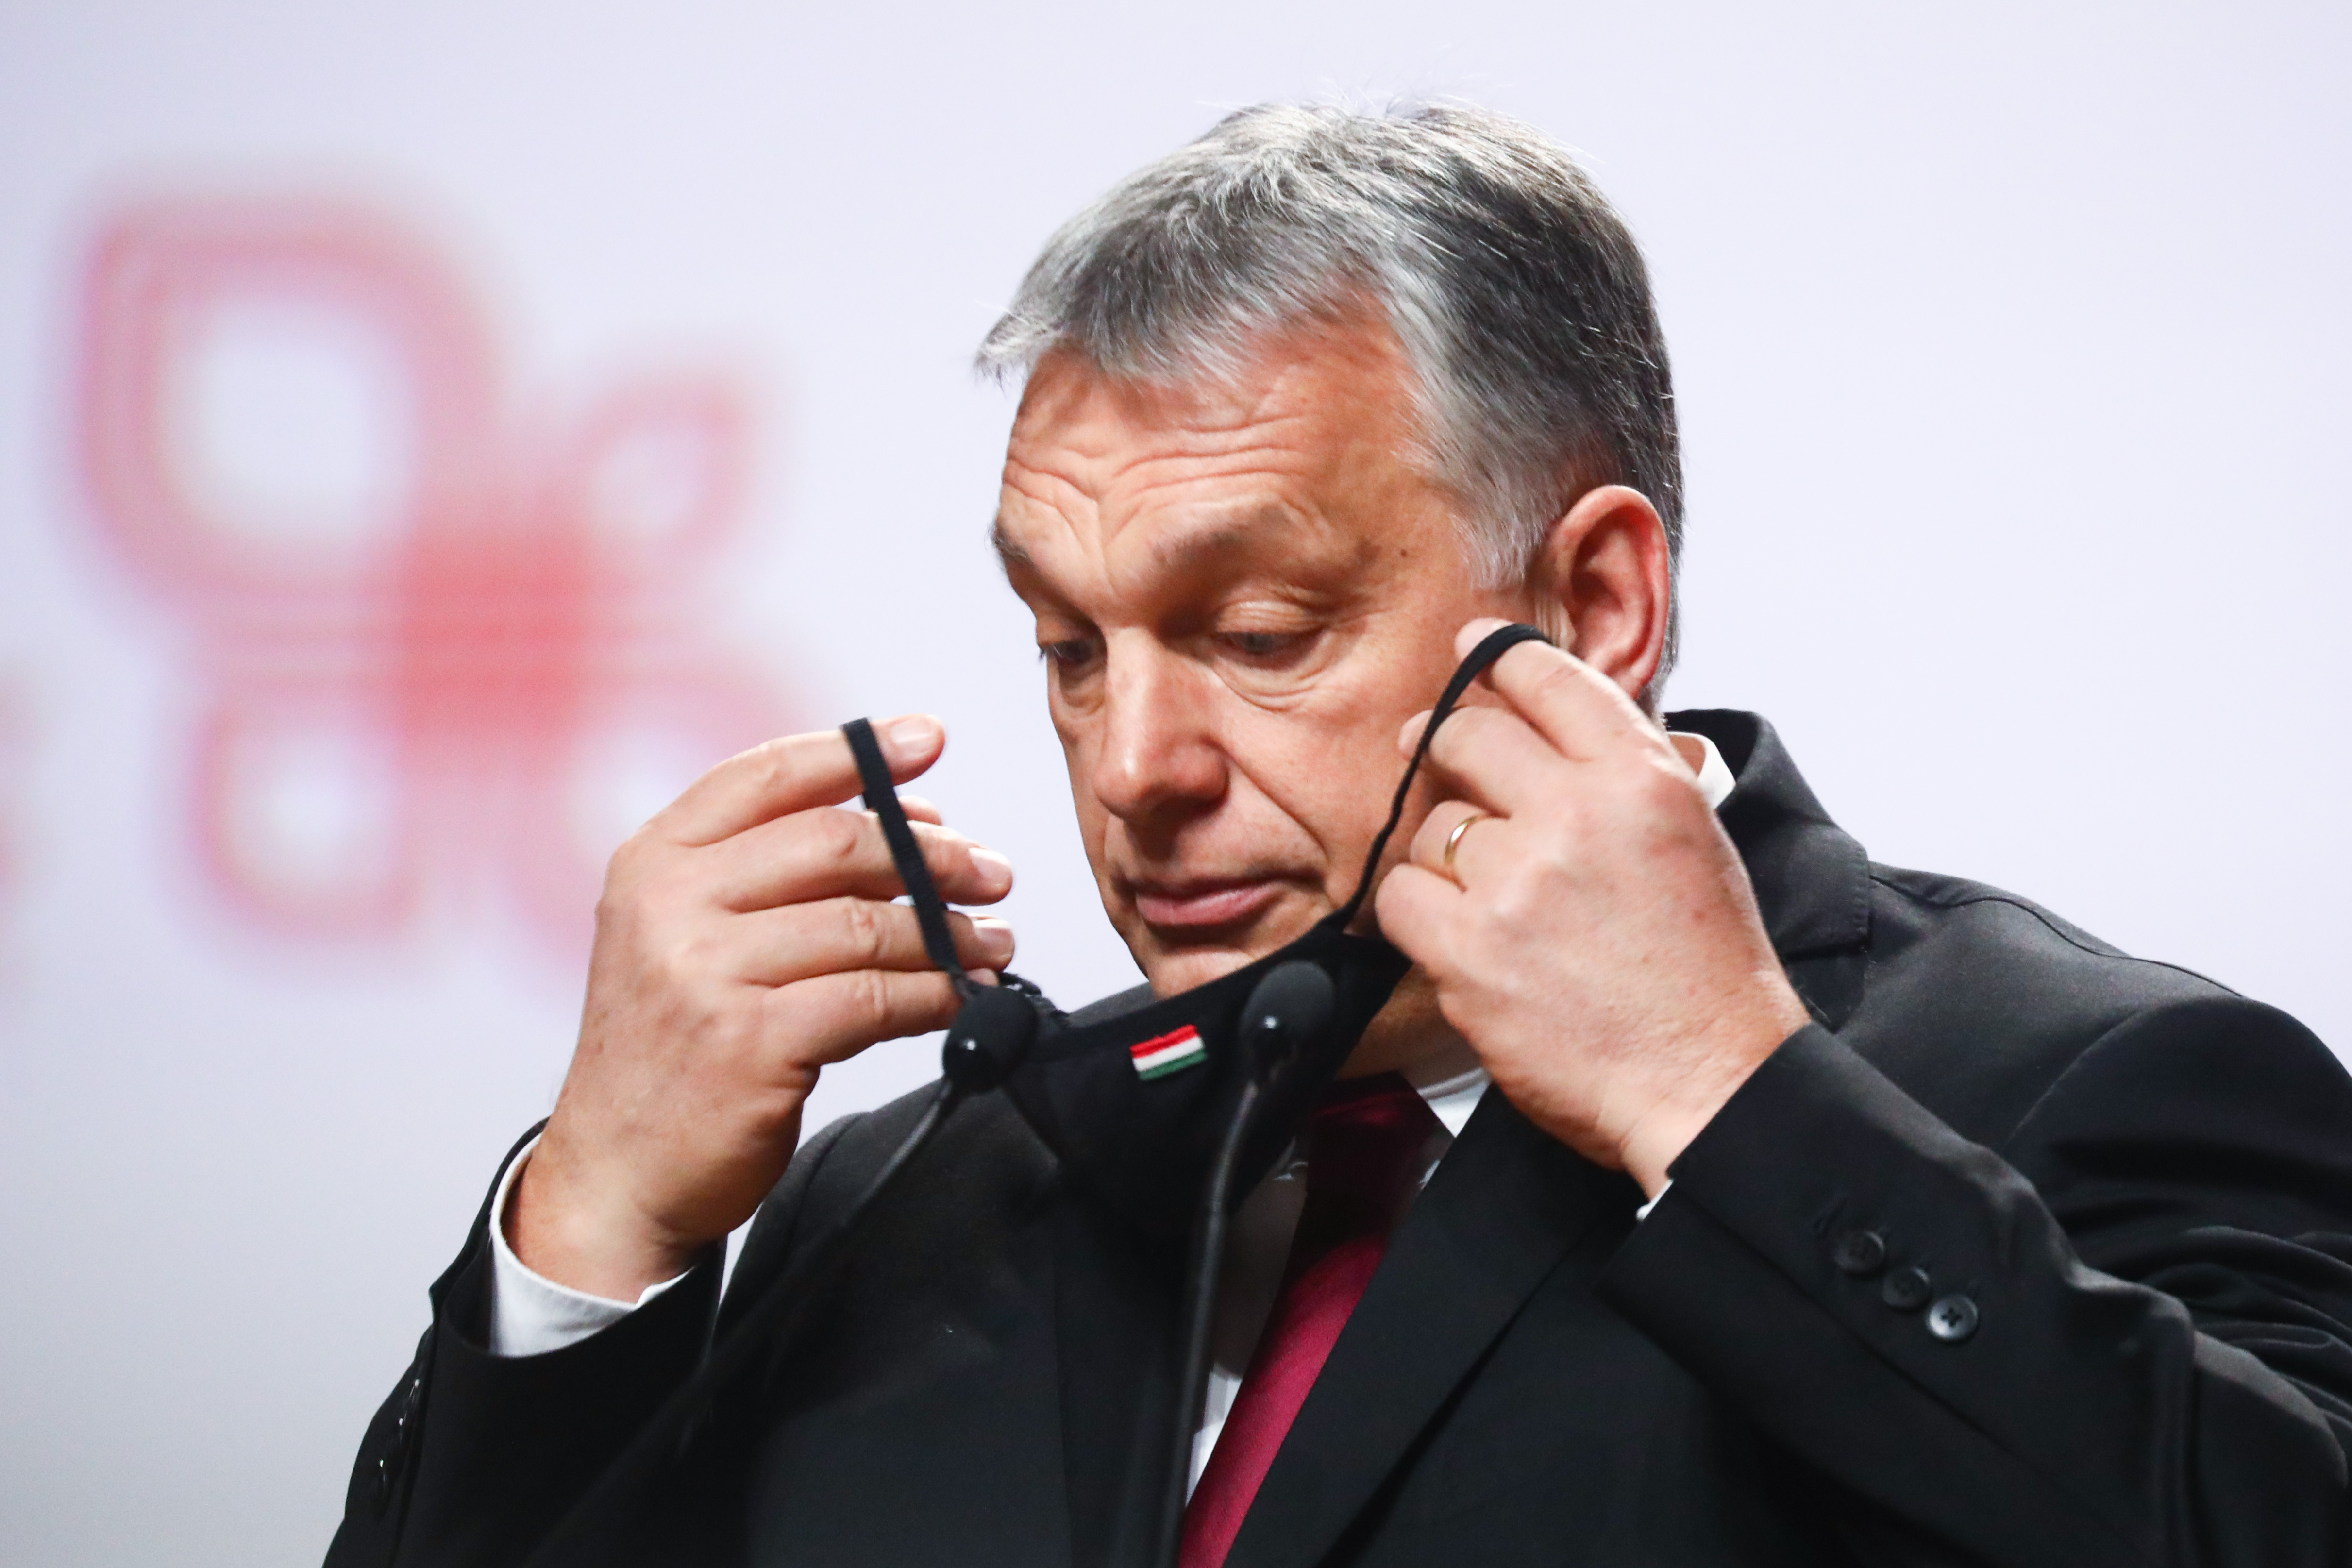 Ilyen még nem volt: Orbán Viktor tanácstalan vírusügyben és ezt nyíltan be is vallja